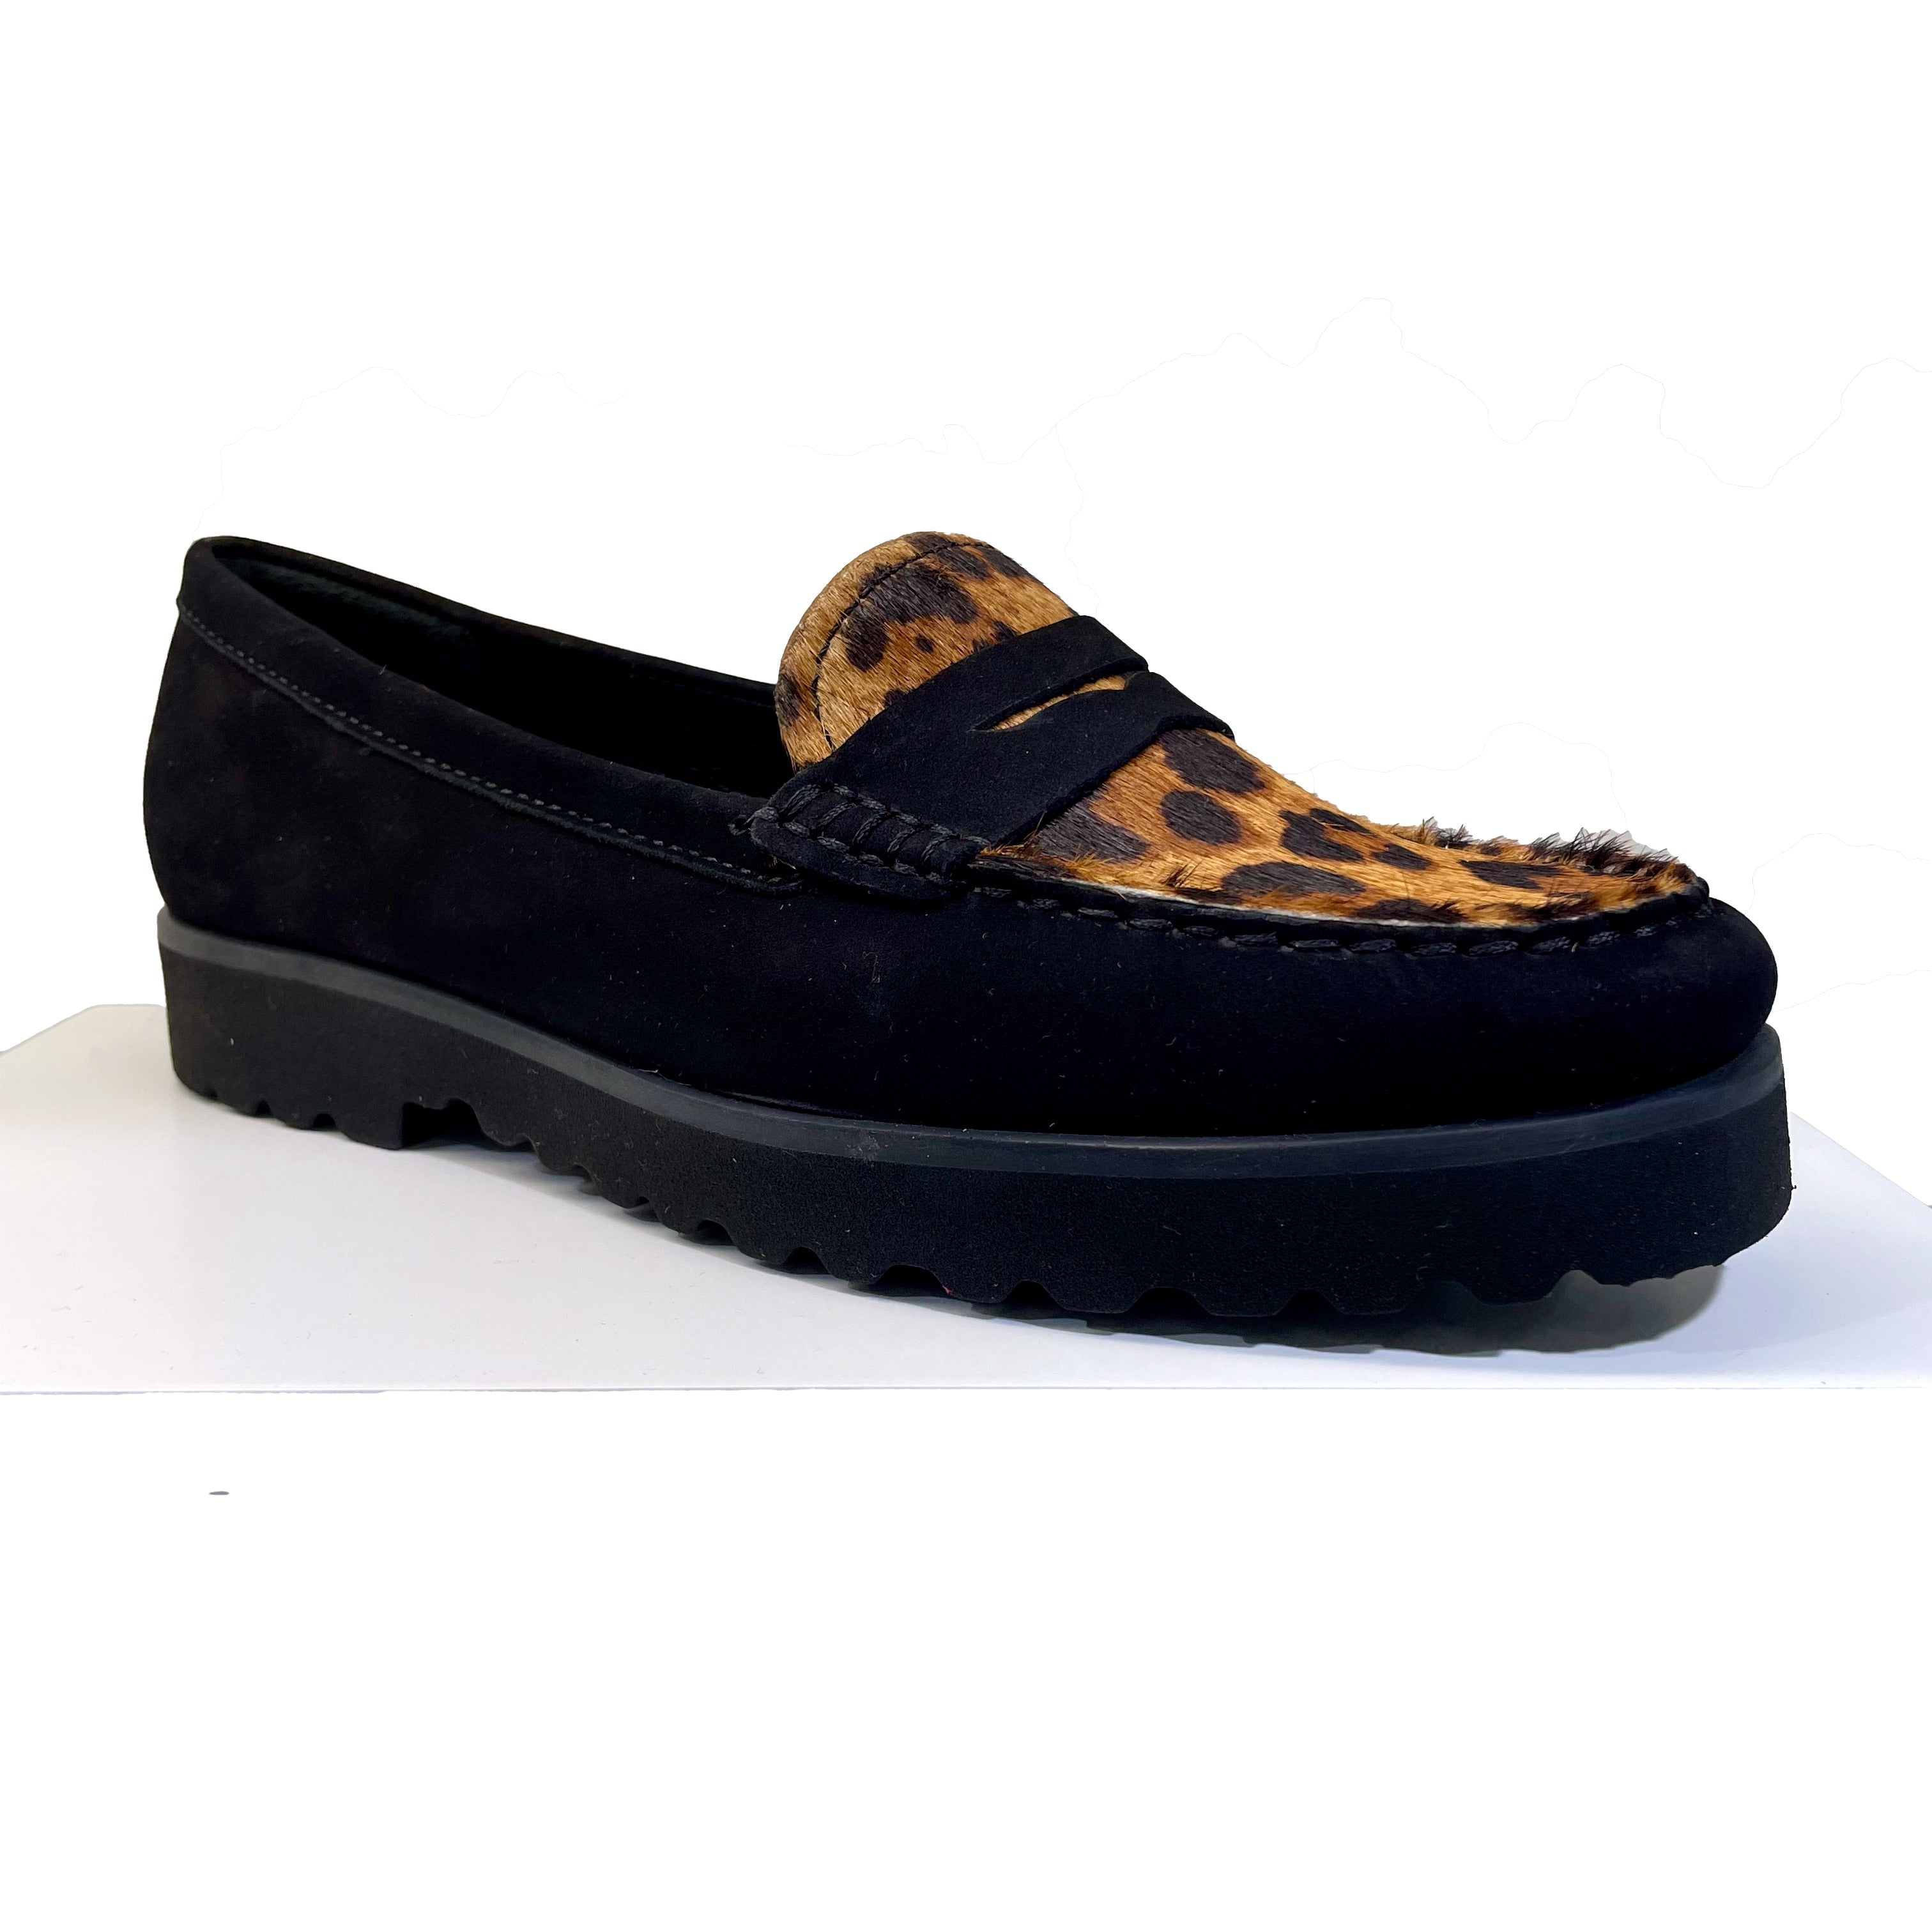 EYS 16529 Ladies Black Nubuck And Leopard Print Leather Slip On Loafers